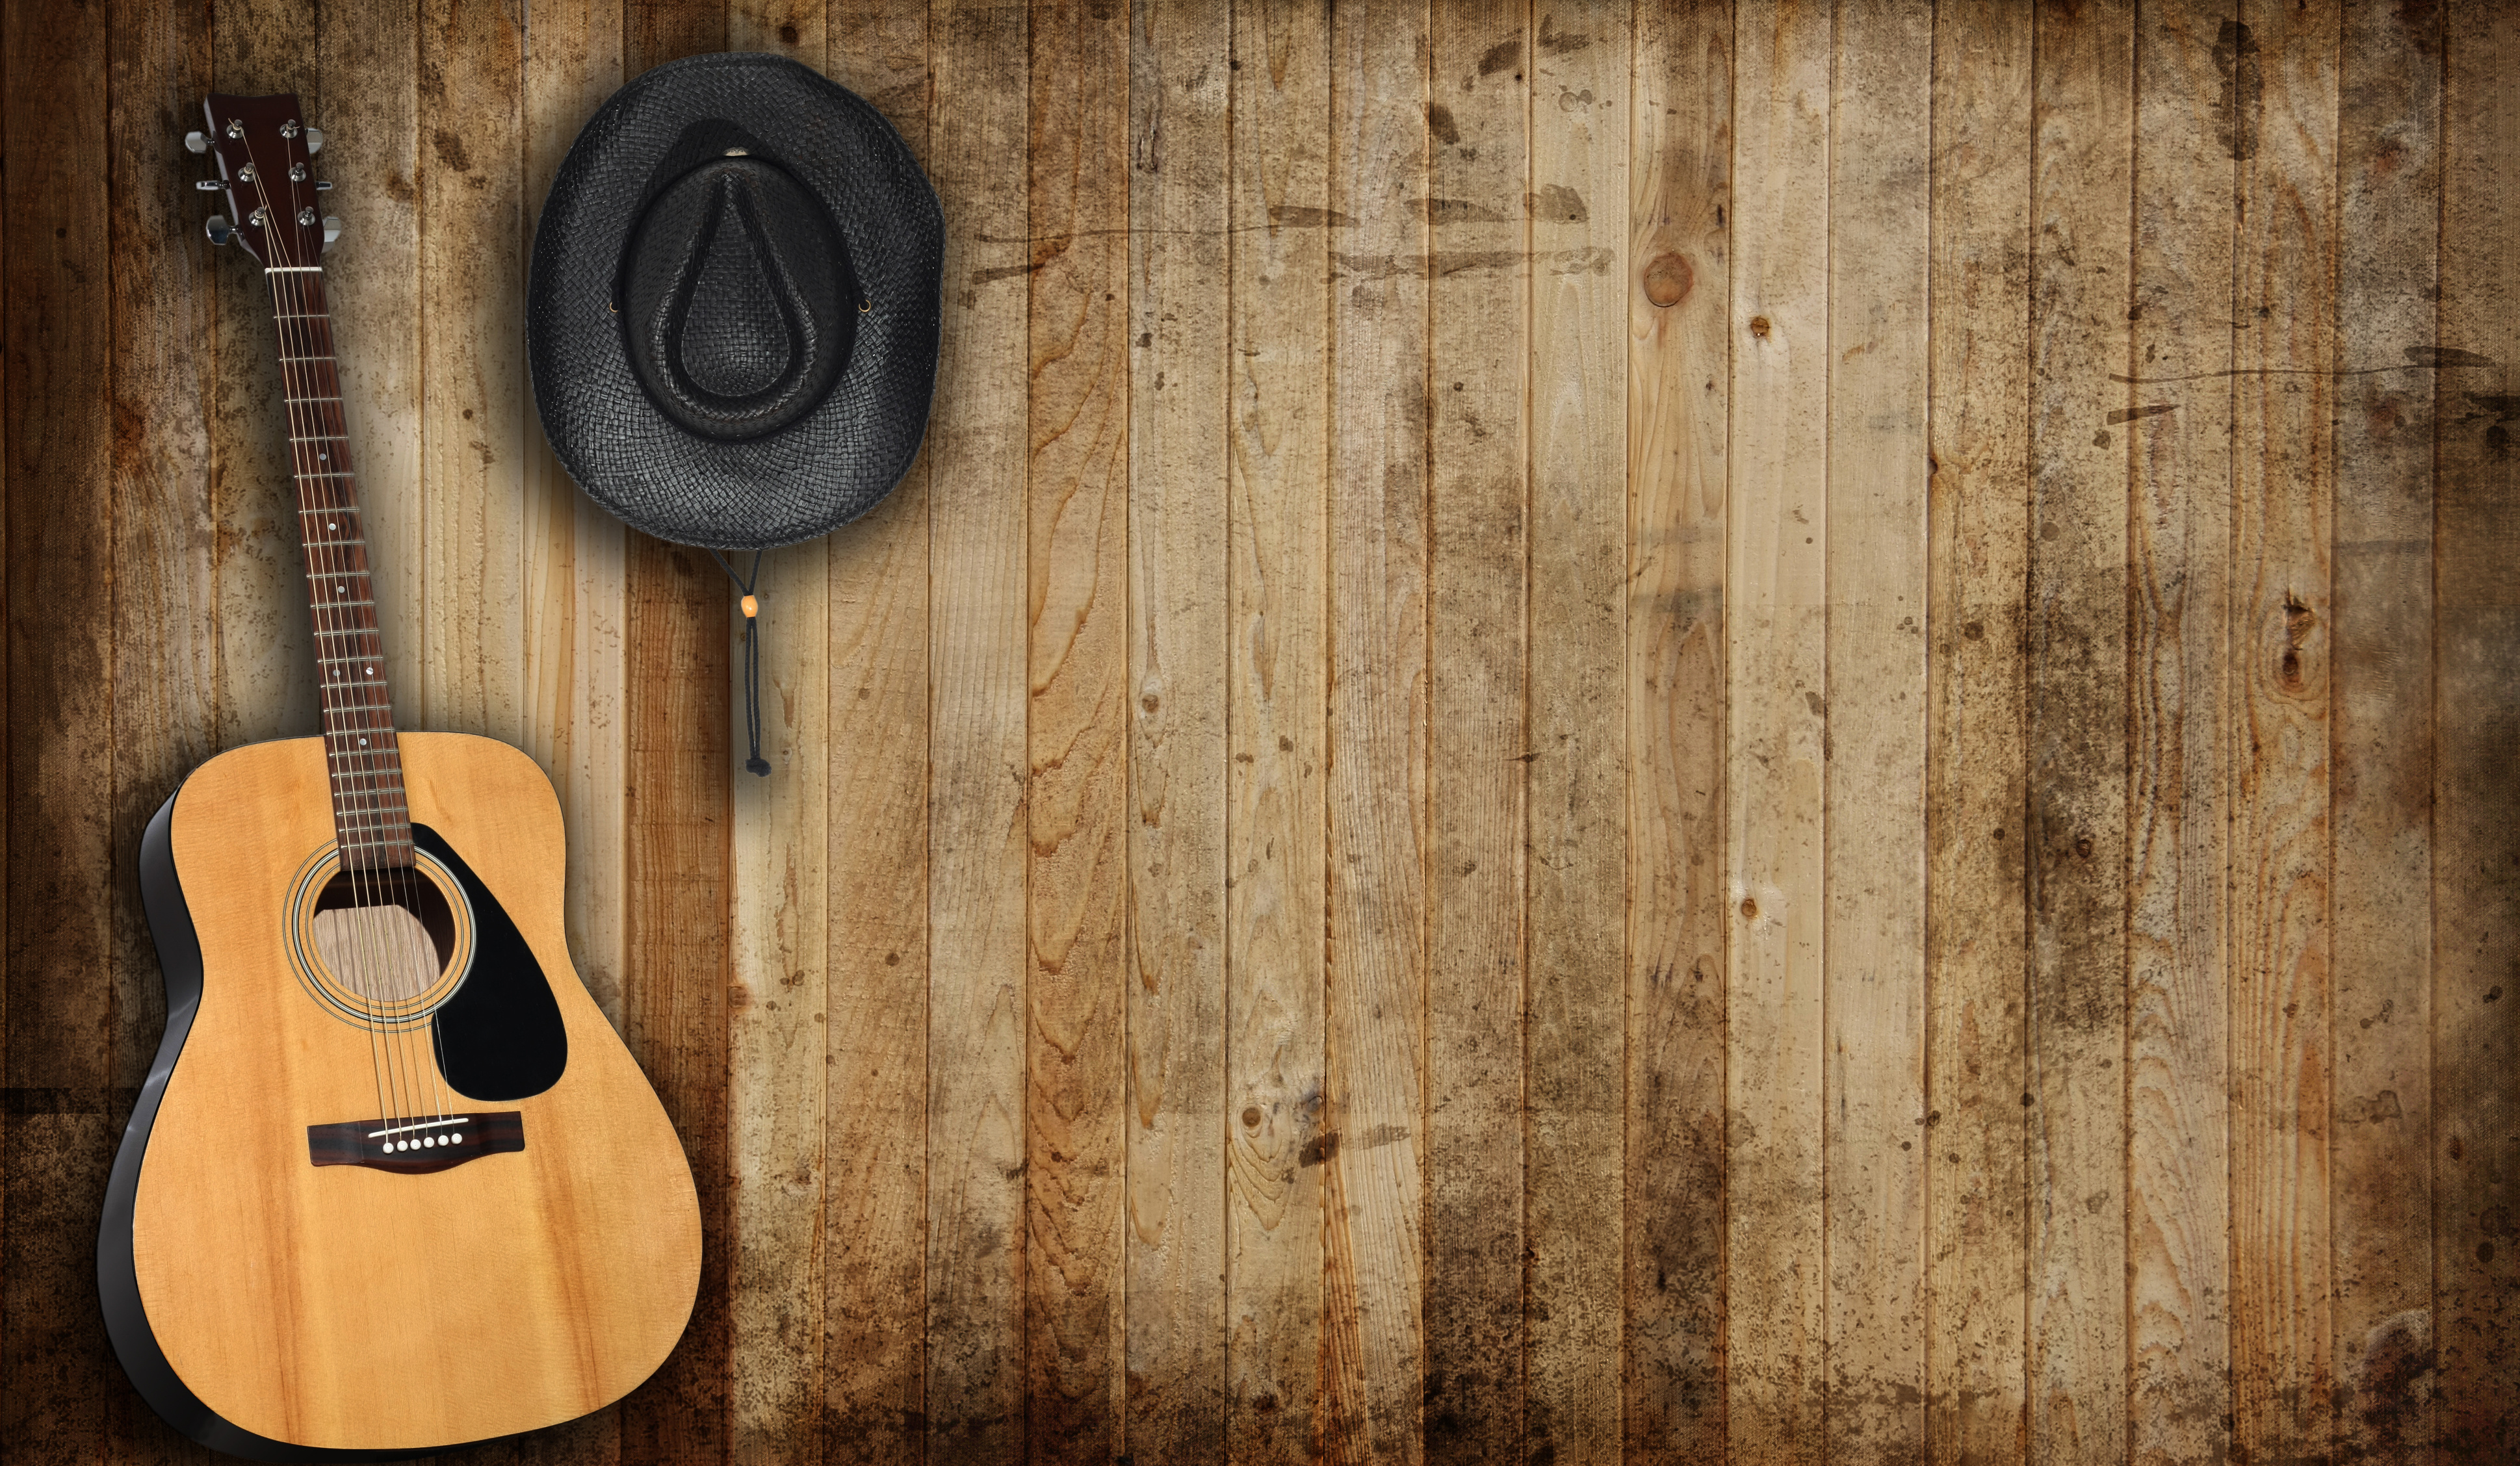 fond d'écran de musique country,bois,guitare,instrument de musique,instruments à cordes pincées,tache de bois